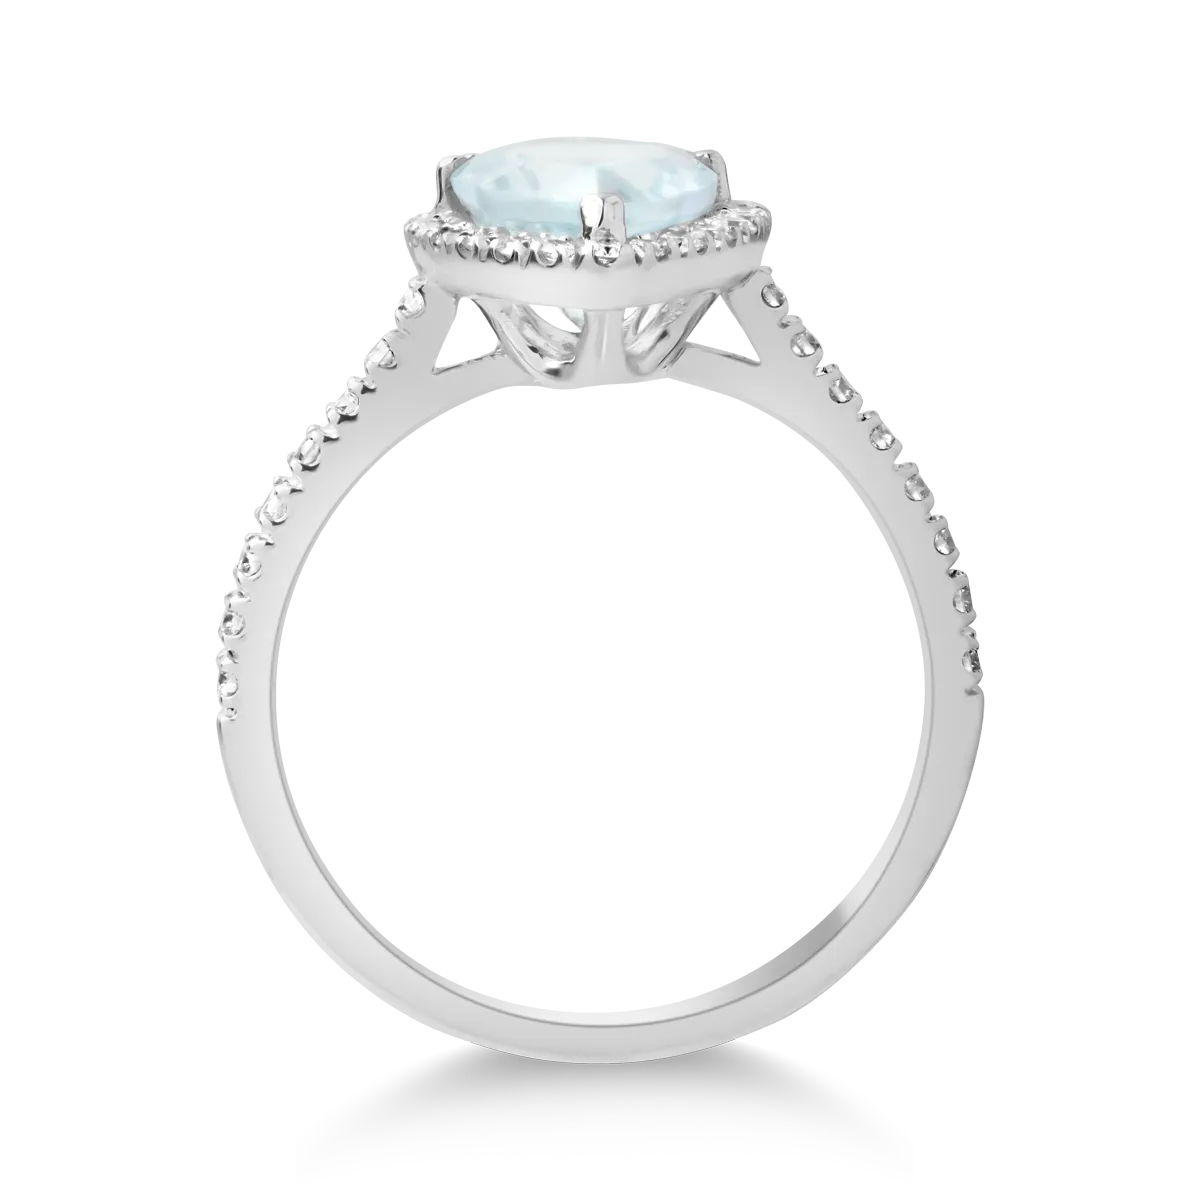 18K white gold ring with 1.67ct aquamarine and 0.47ct diamonds